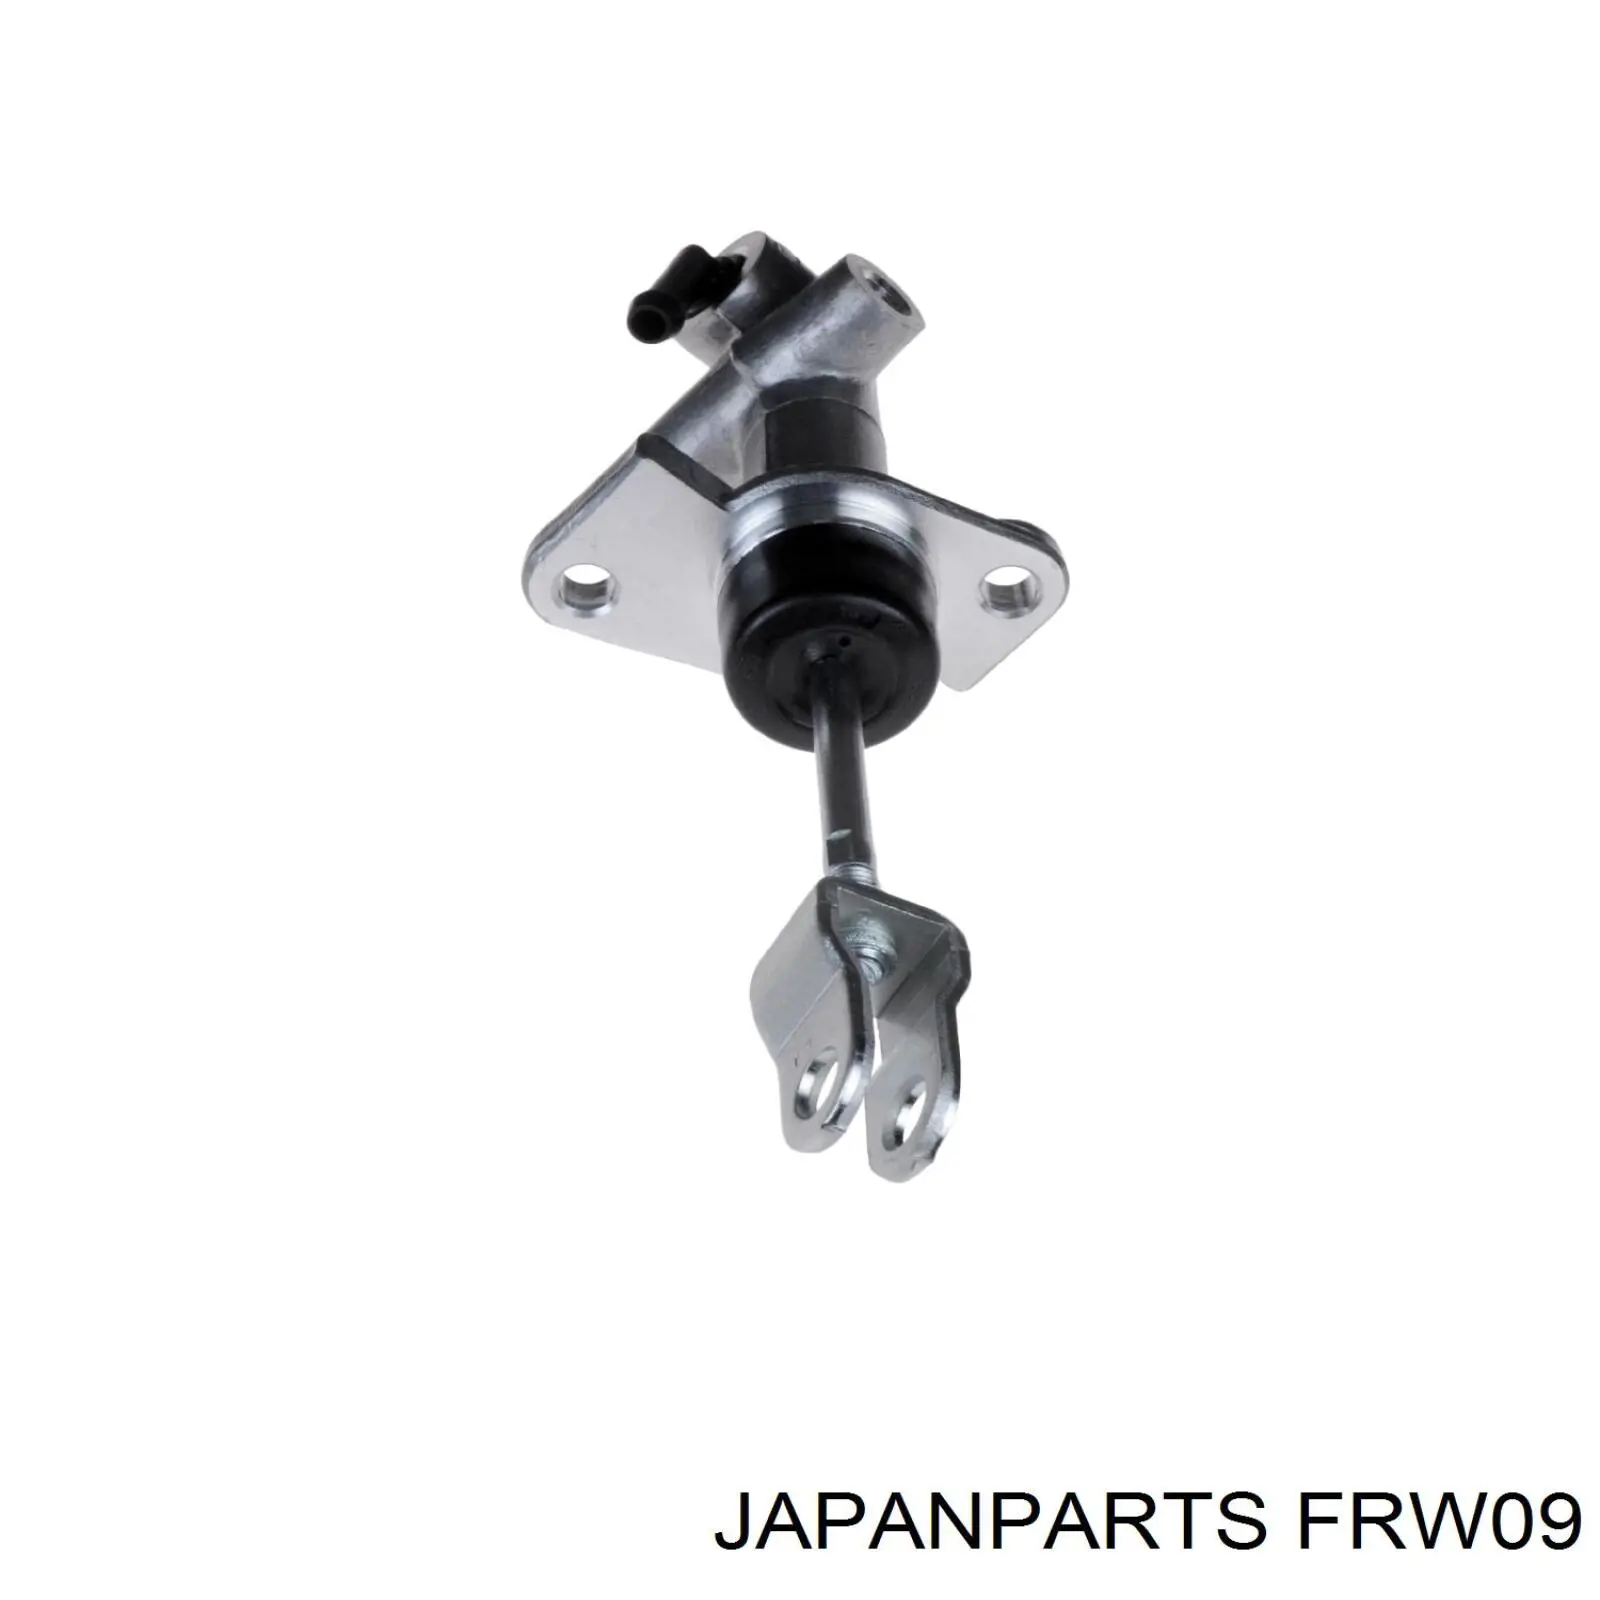 FRW09 Japan Parts cilindro maestro de embrague